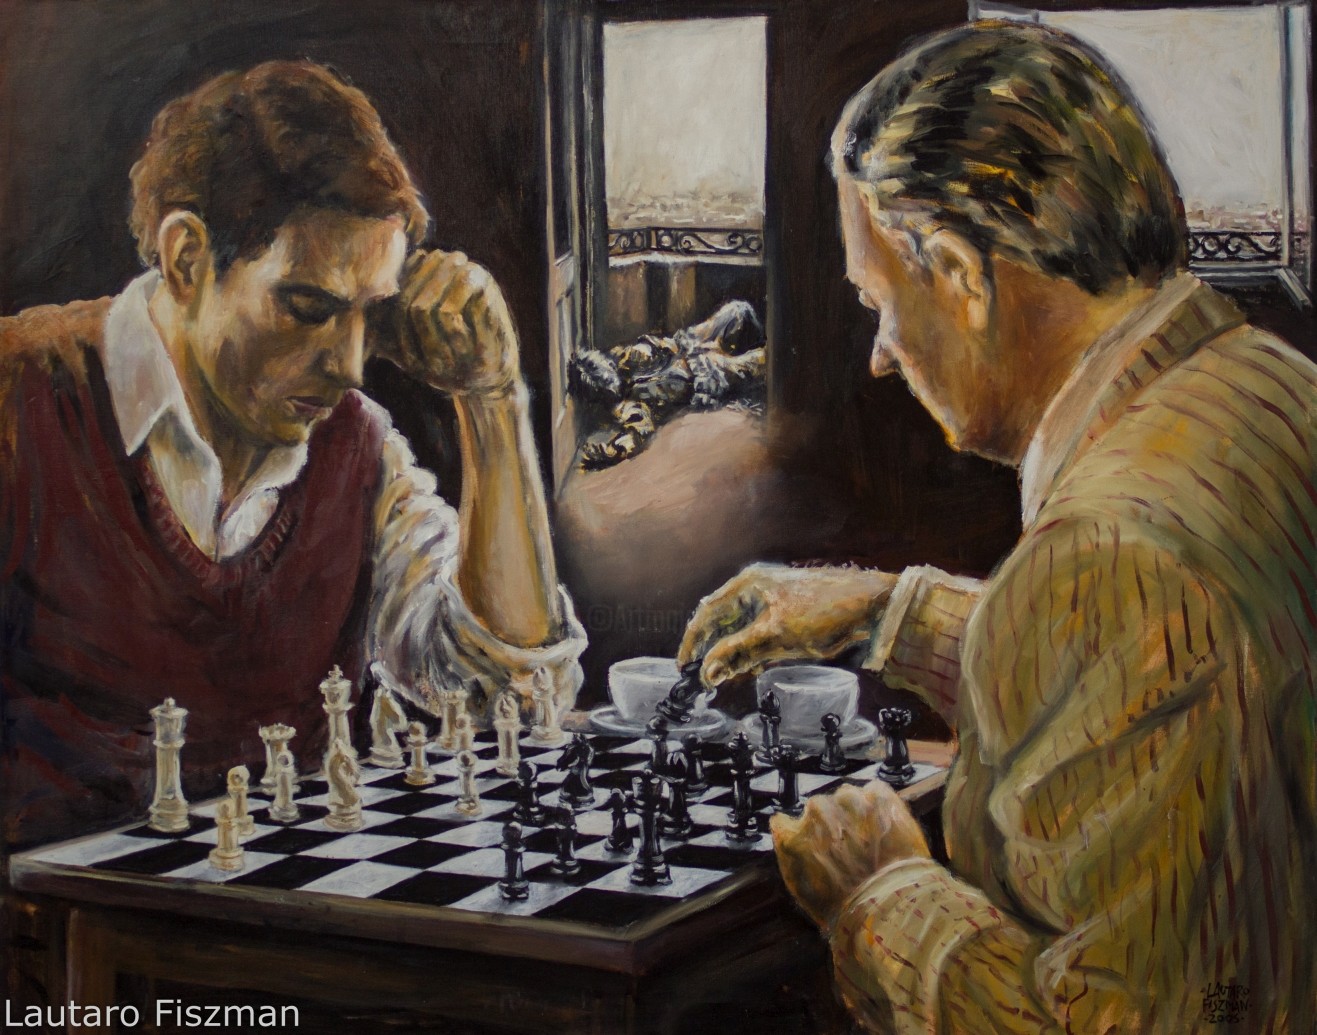 Игра в шахматы с друзьями. Шахматисты картина Джеймса Норткота. Мясоедов игра в шахматы. Картина Марселя Дюшана "шахматная партия".